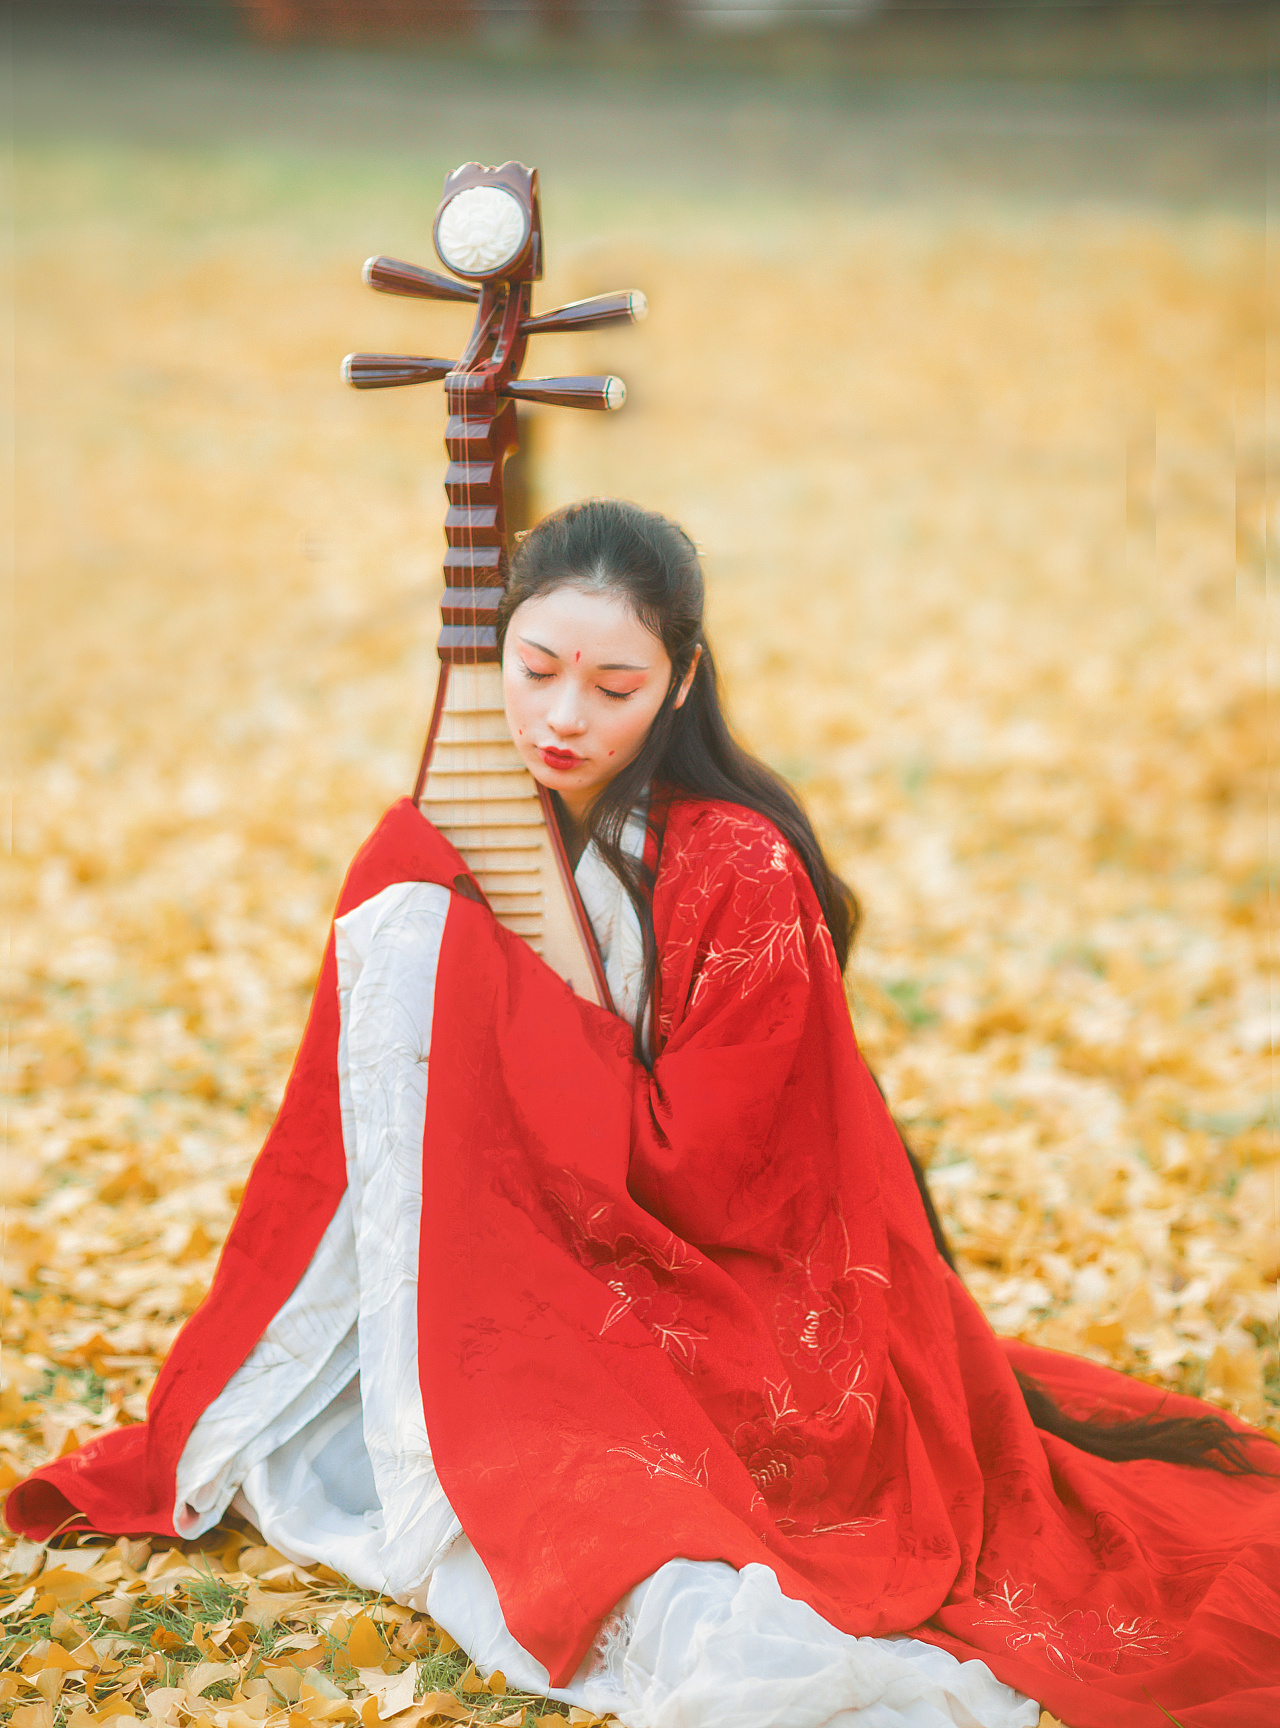 古典琵琶摄影图片-古典琵琶摄影作品-千库网